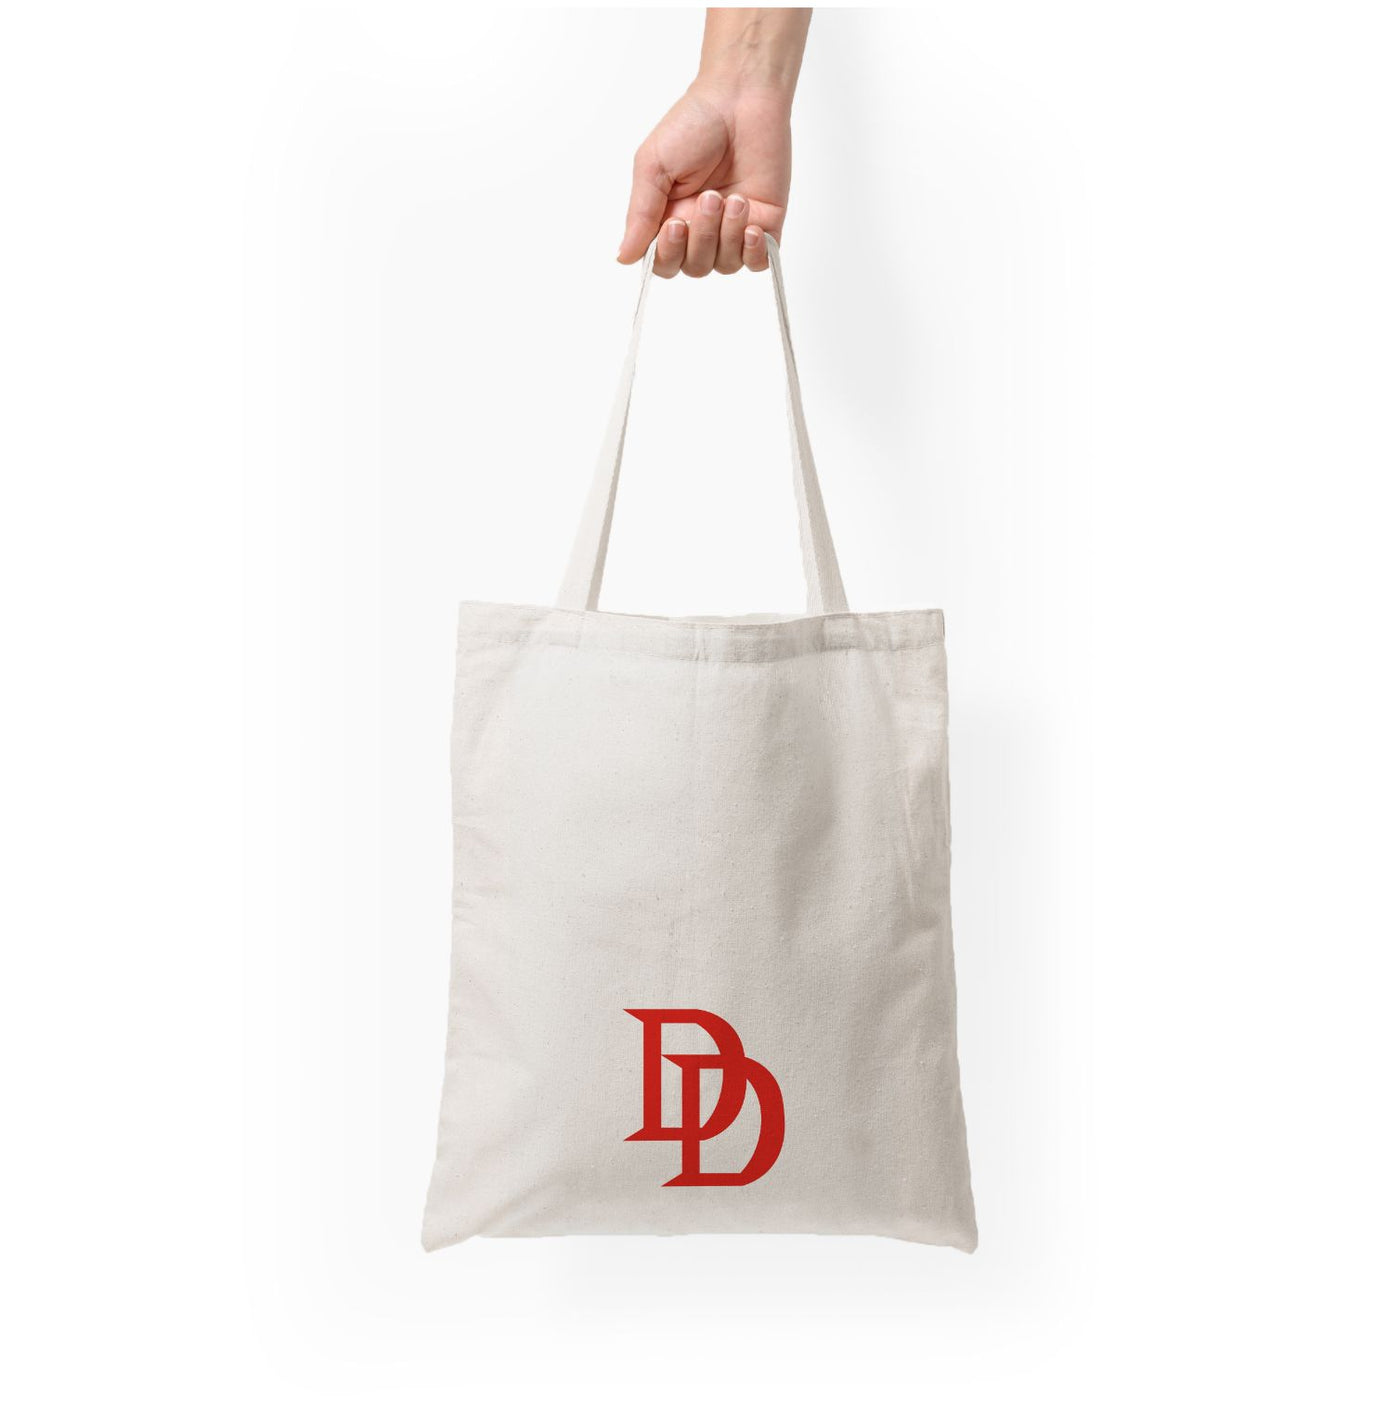 DD - Daredevil Tote Bag